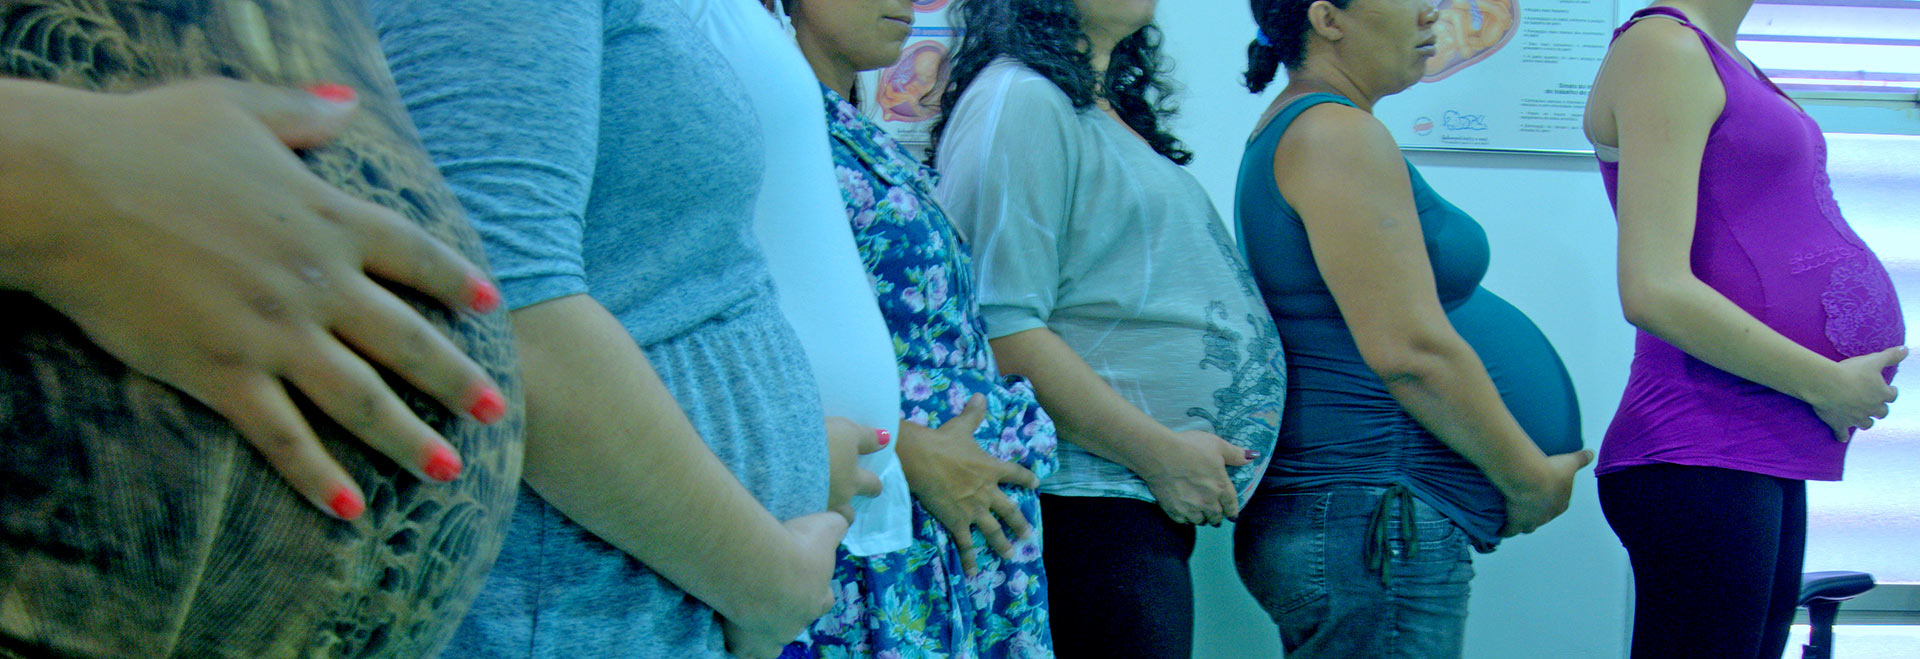 foto mostra mulheres grávidas enfileiradas, com suas barrigas em destaque